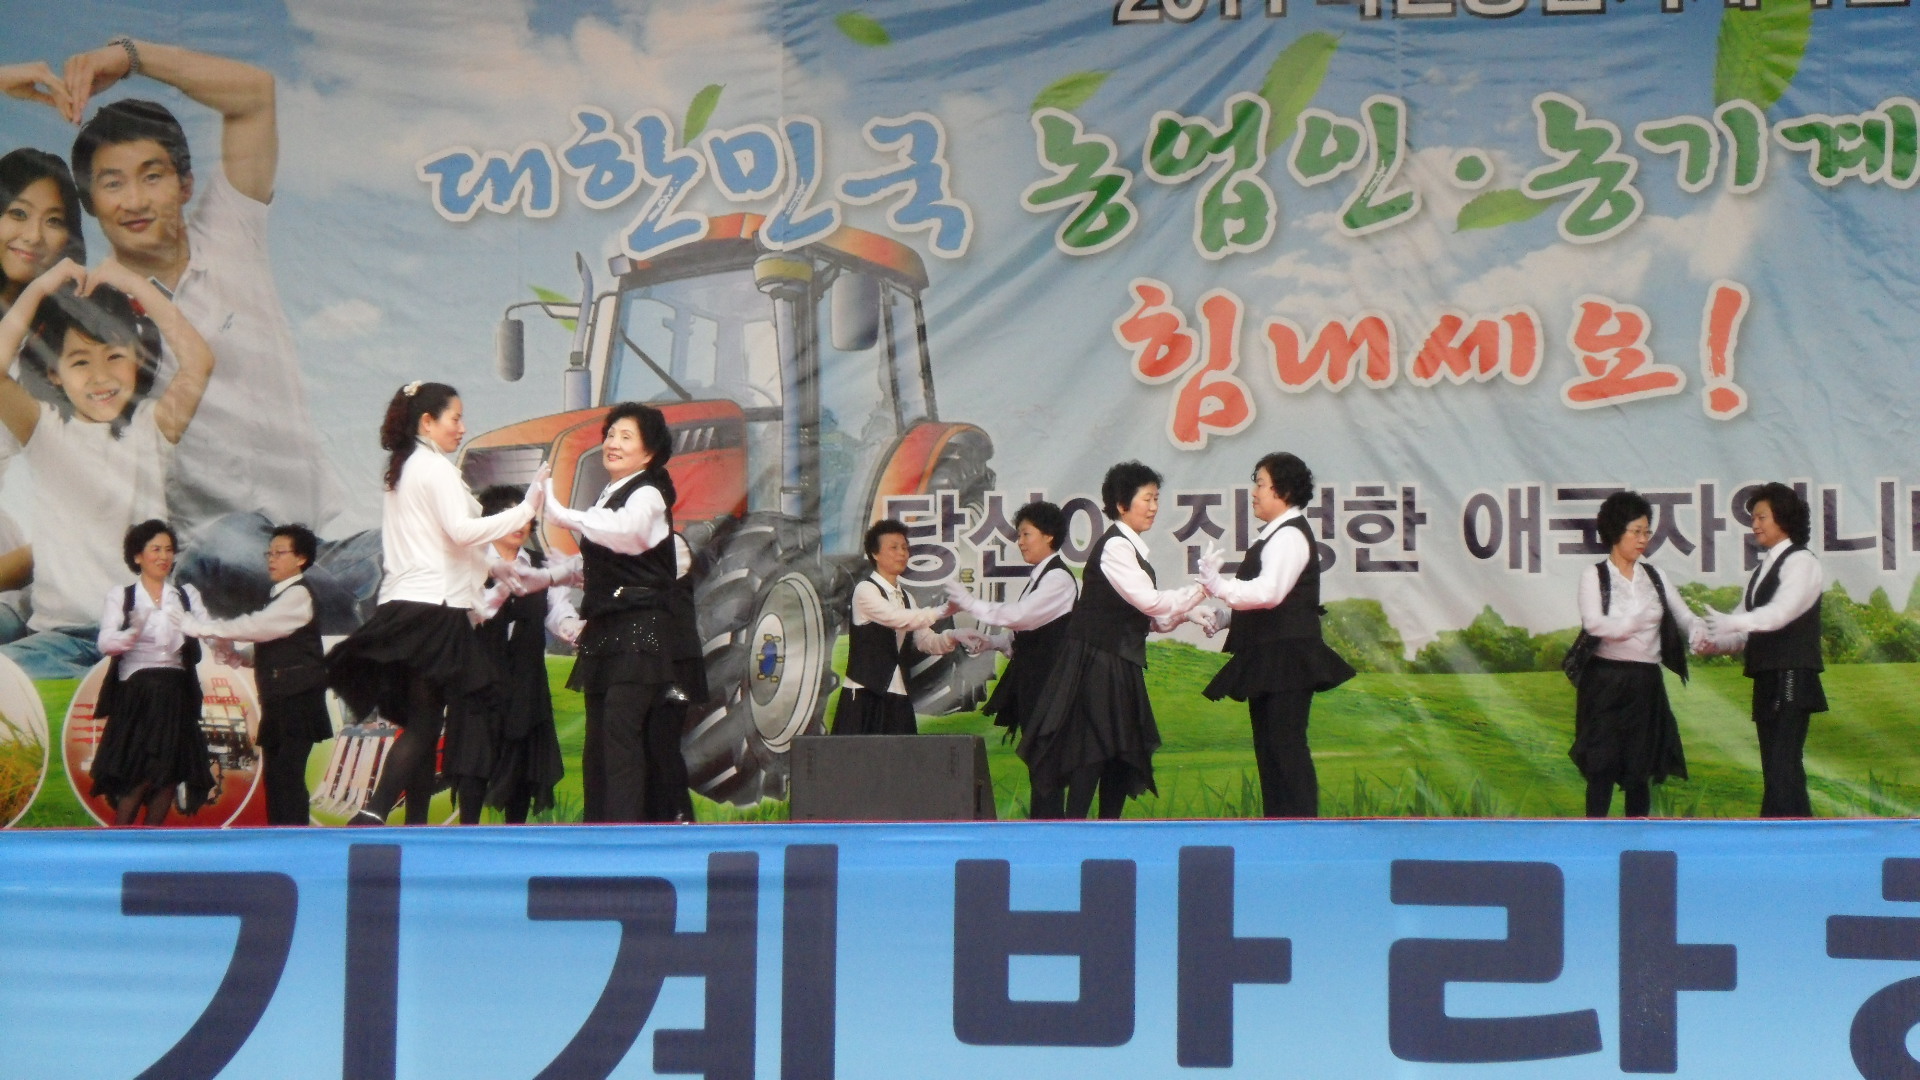 2011 익산농업기계박람회 공연(댄스스포츠팀)3